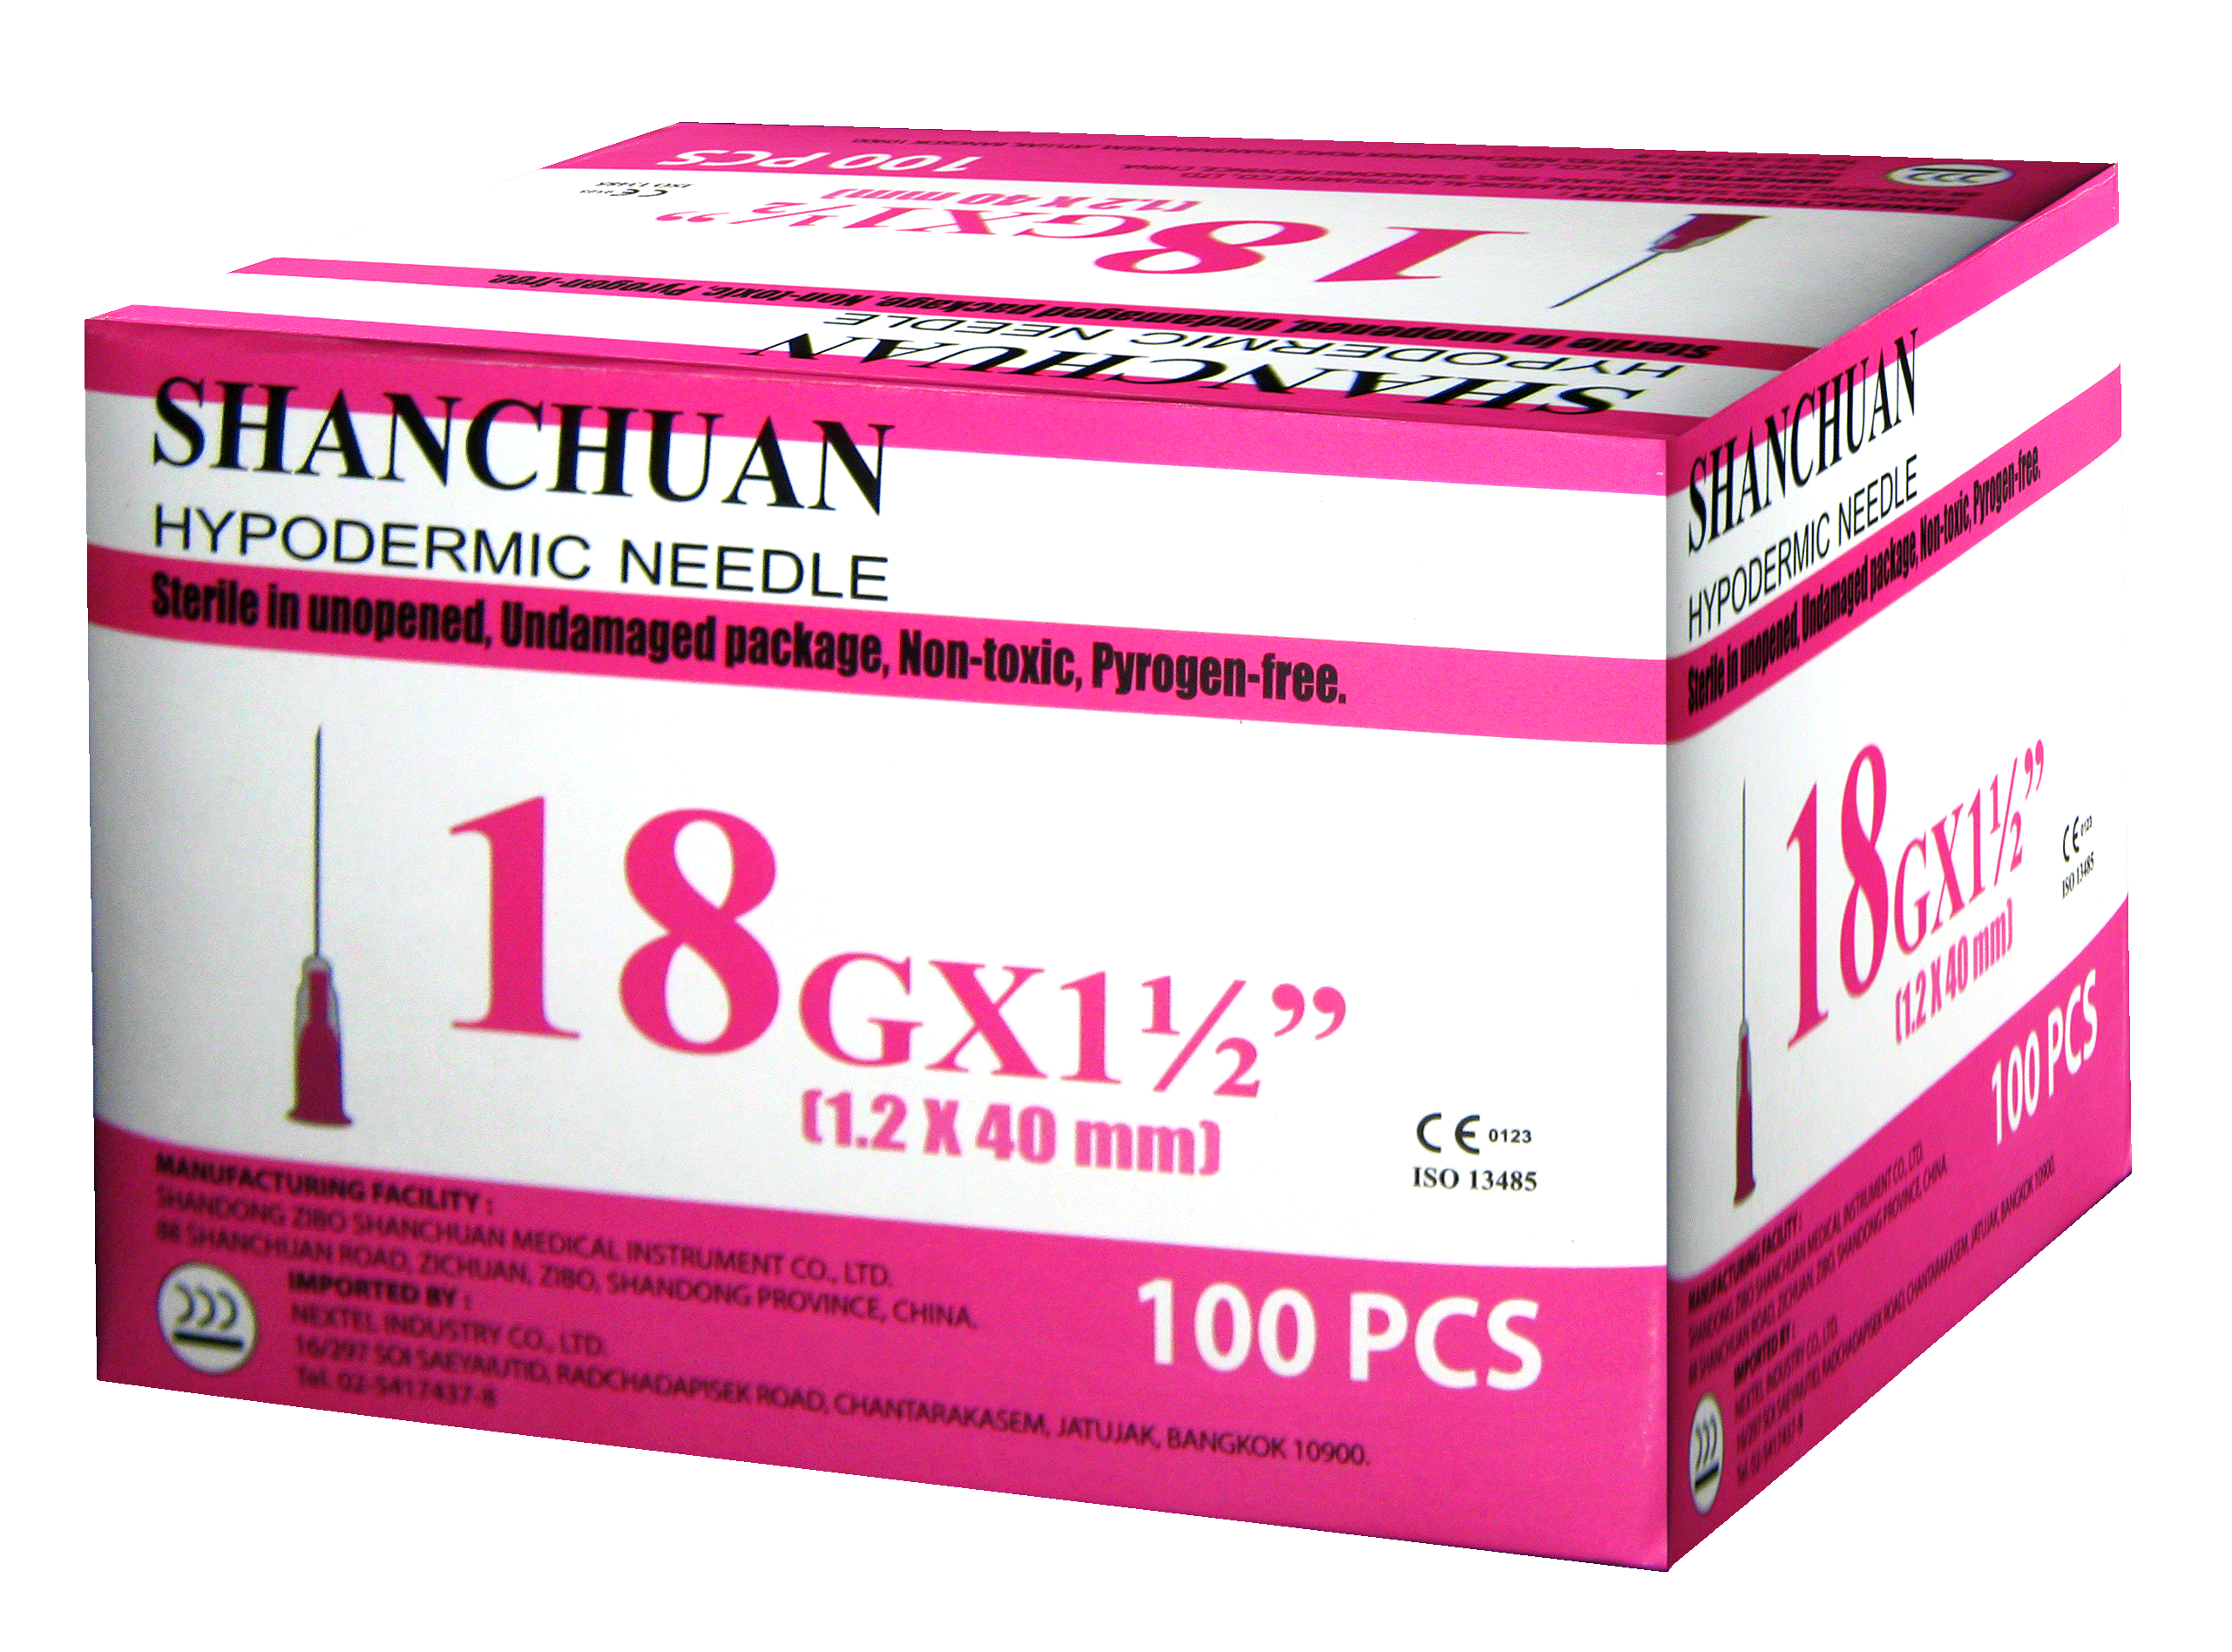 SHANCHUAN (ซานชวน) เข็มฉีดยาพลาสติก เบอร์ 18Gx1 1/2"